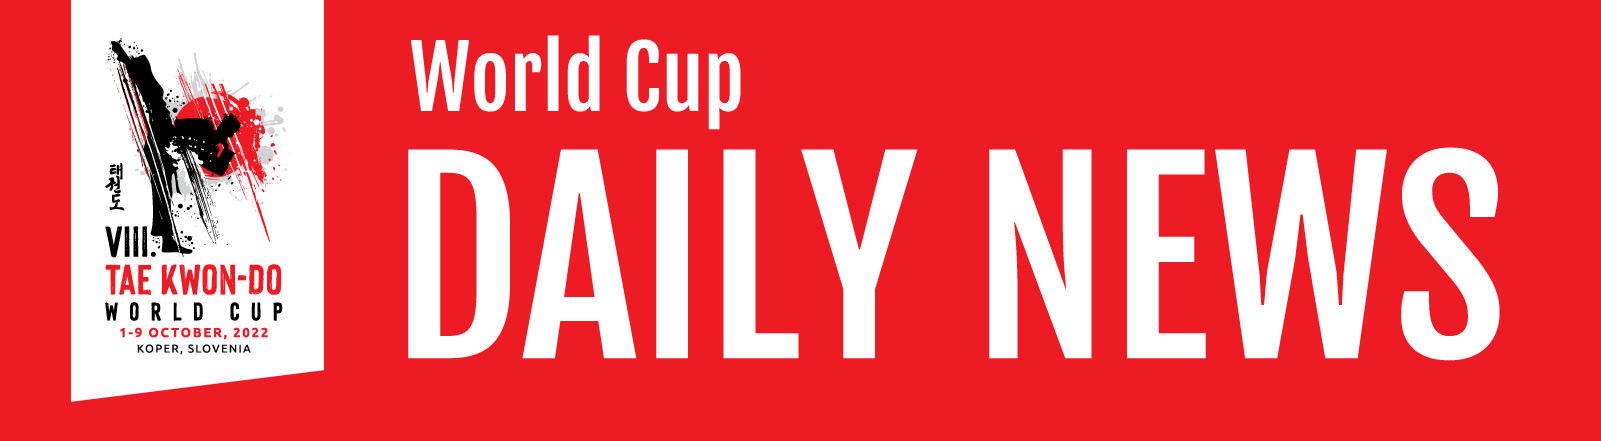 header VIII World Cup News